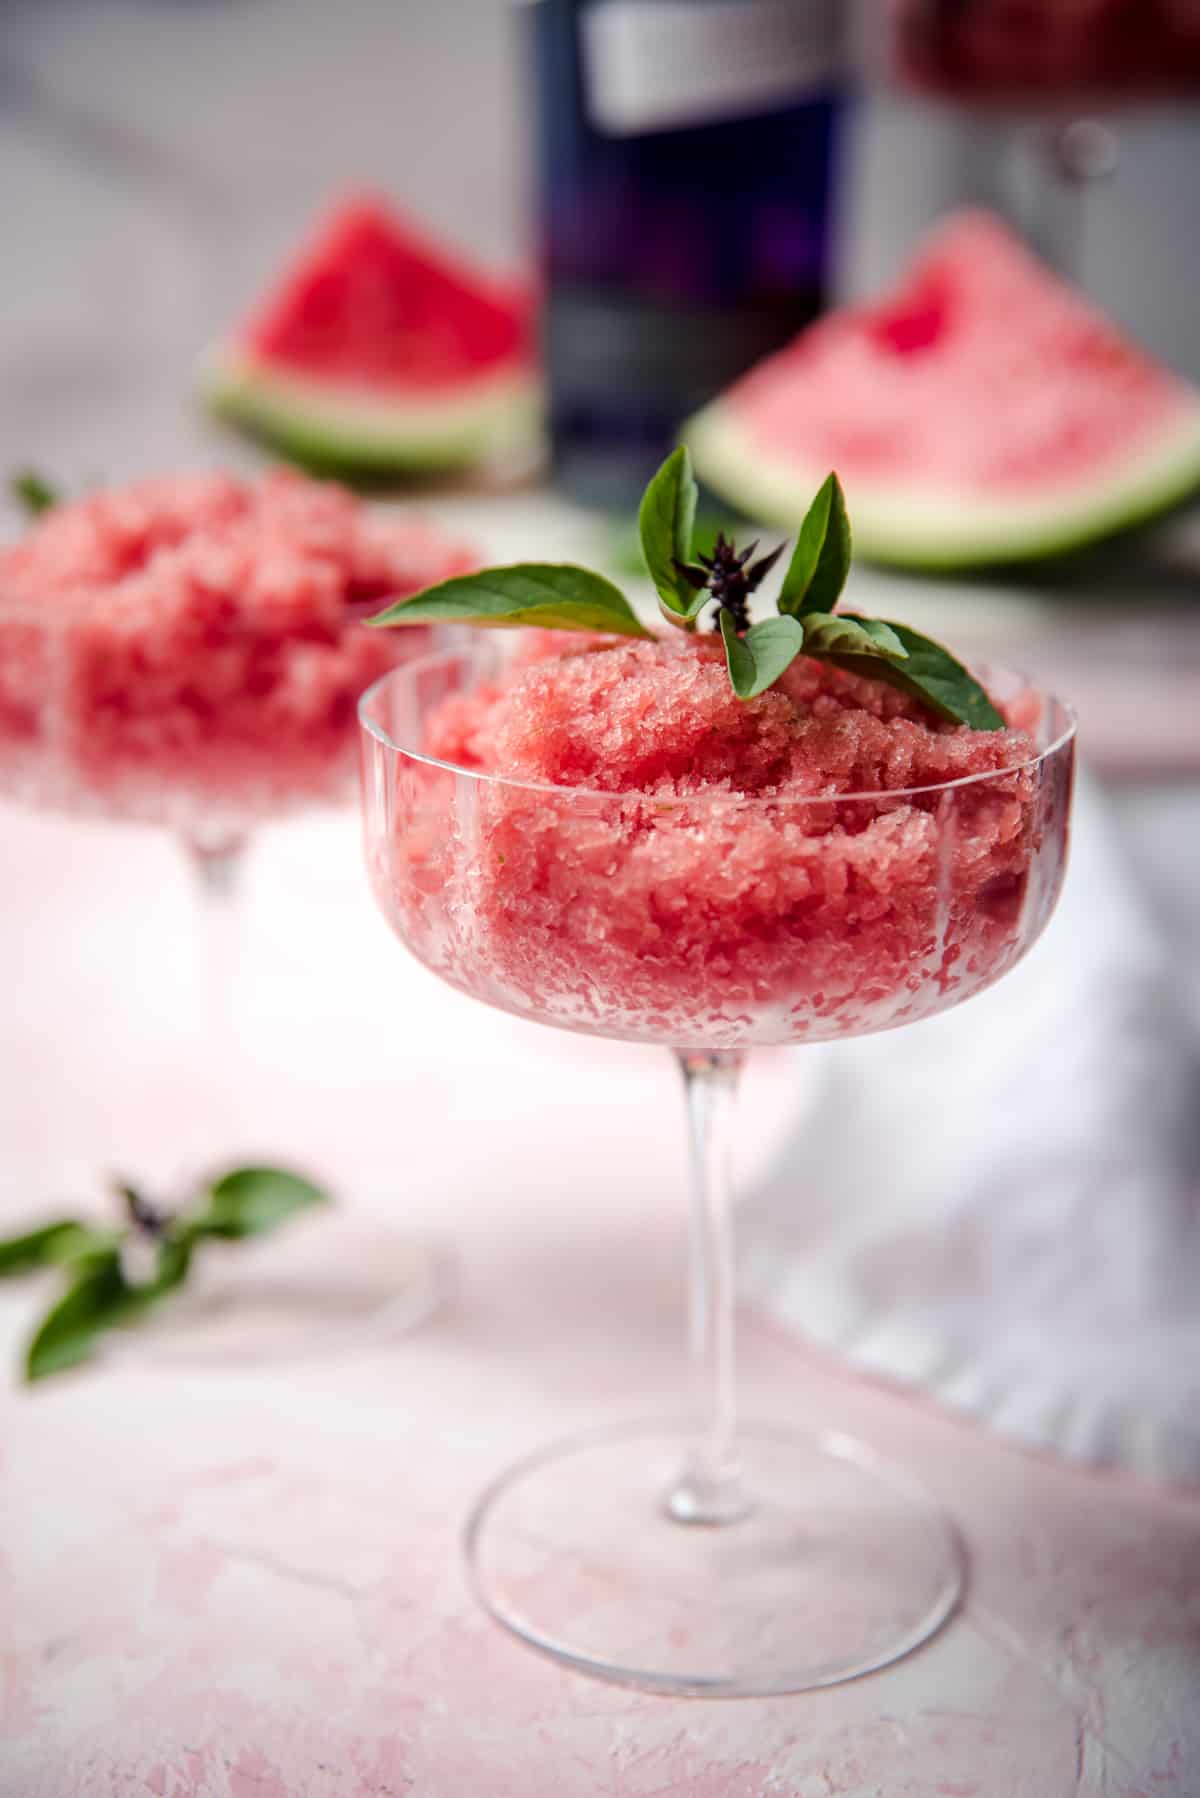 watermelon granita scooped into martini coupe glasses